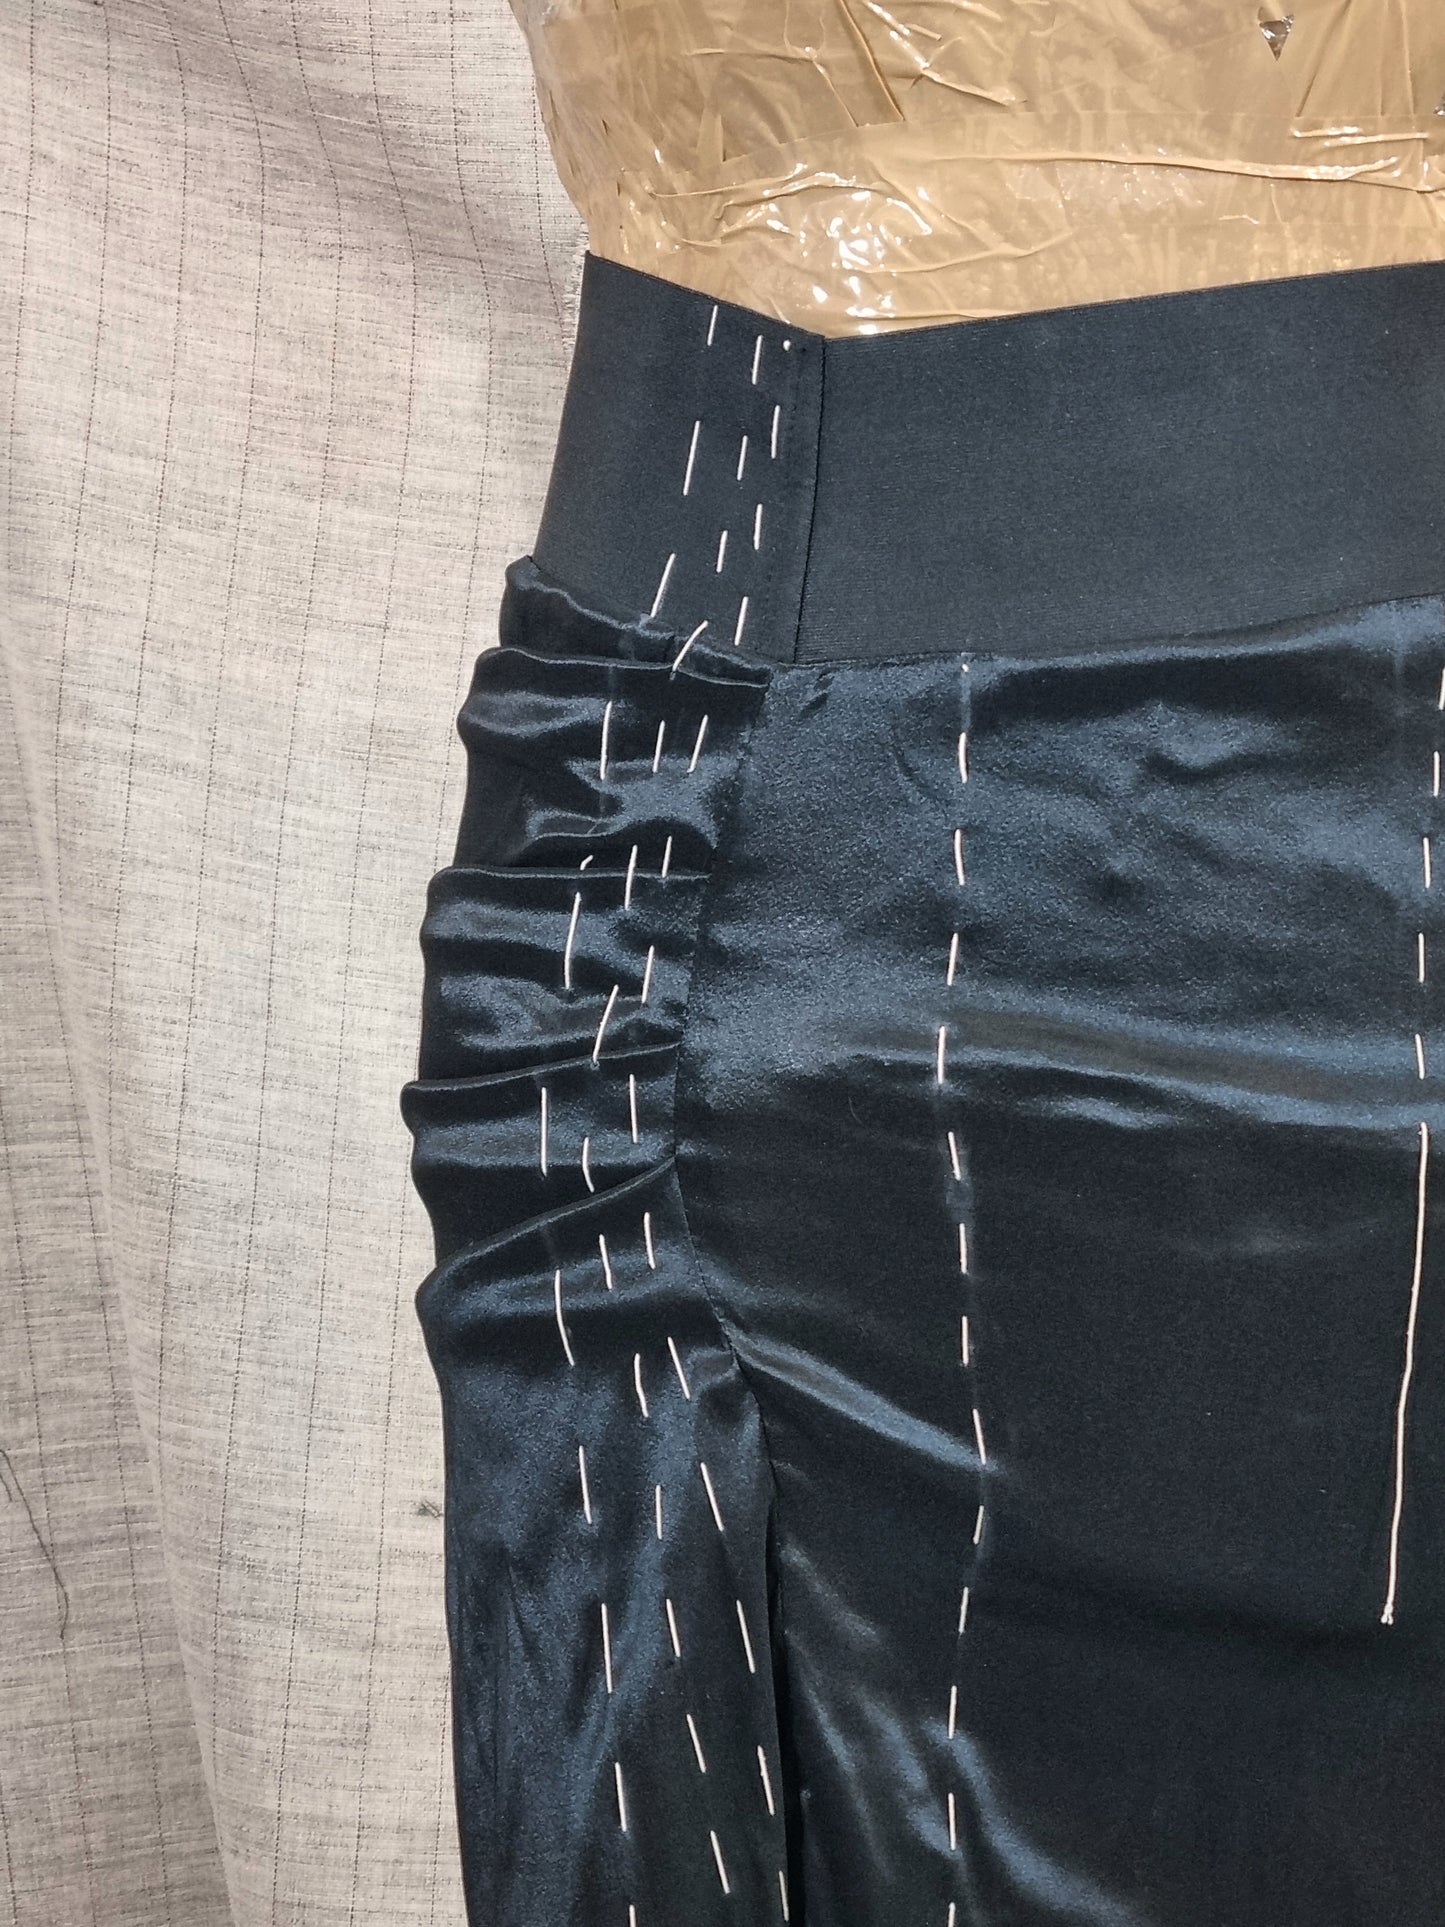 Black Draped Skirt With Handmade Decorative Stitching